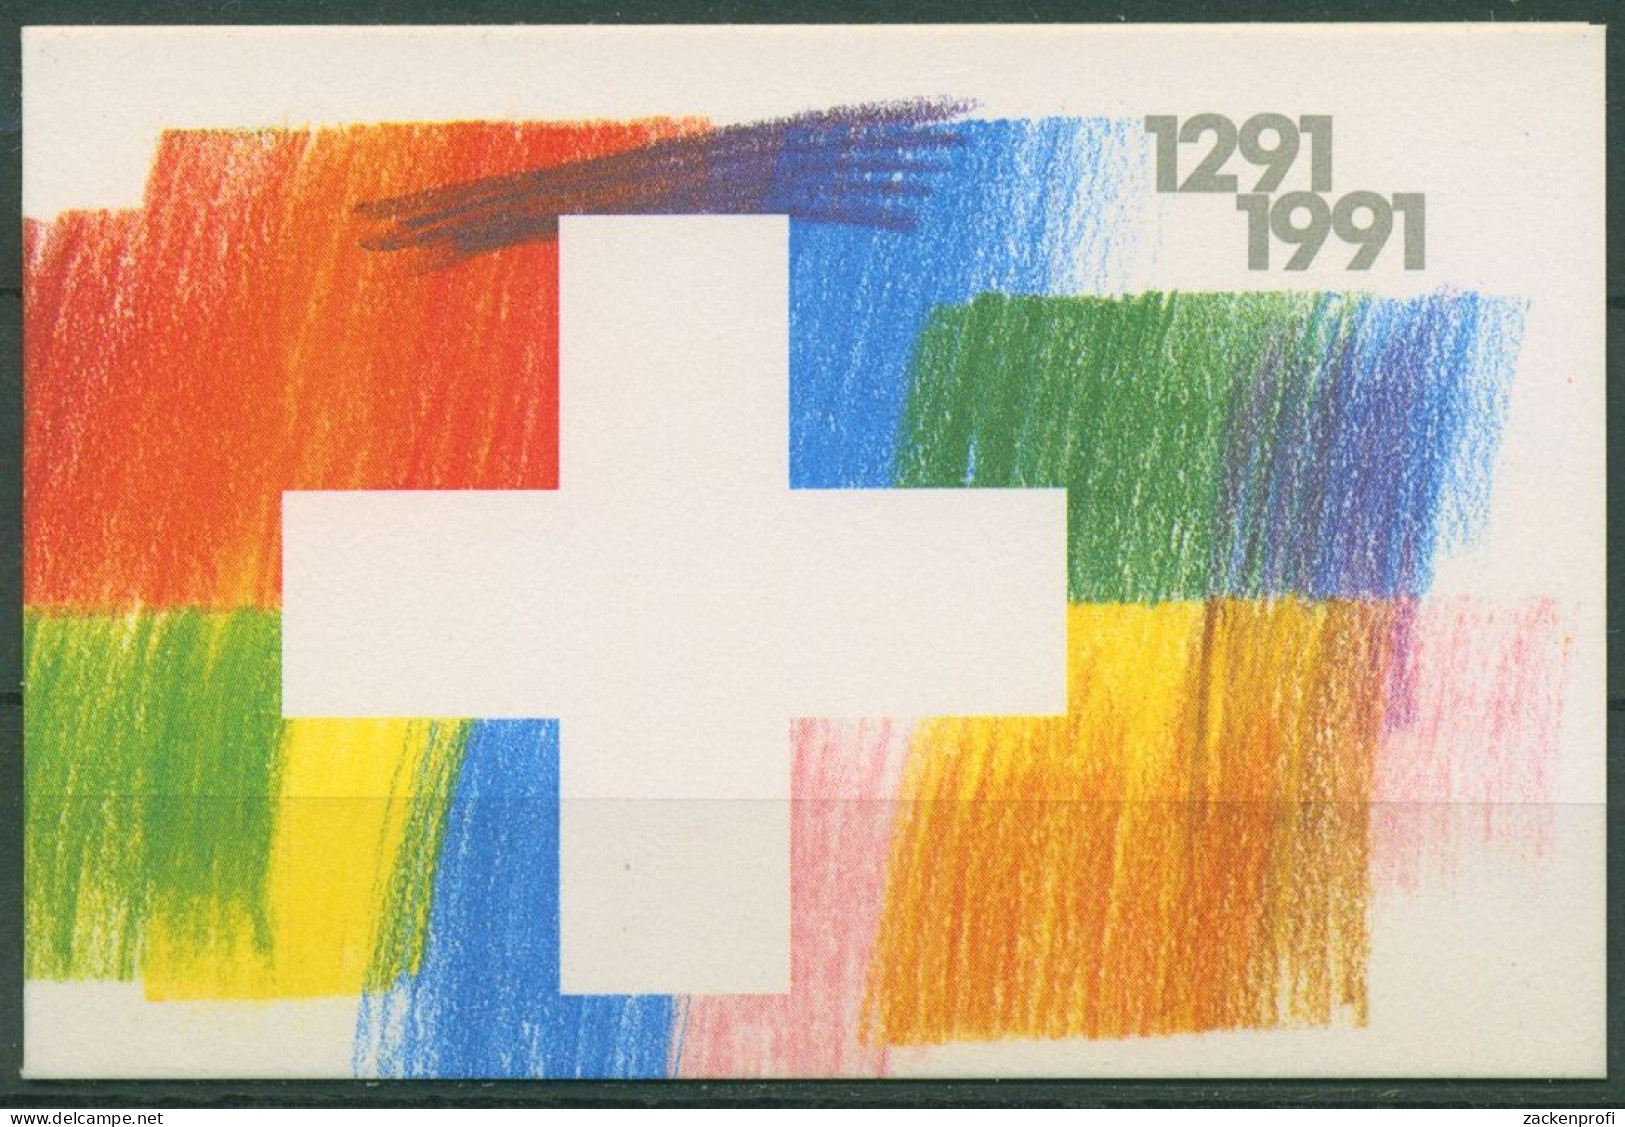 Schweiz 1991 Eidgenossenschaft Markenheftchen 89 Postfrisch (C62174) - Carnets